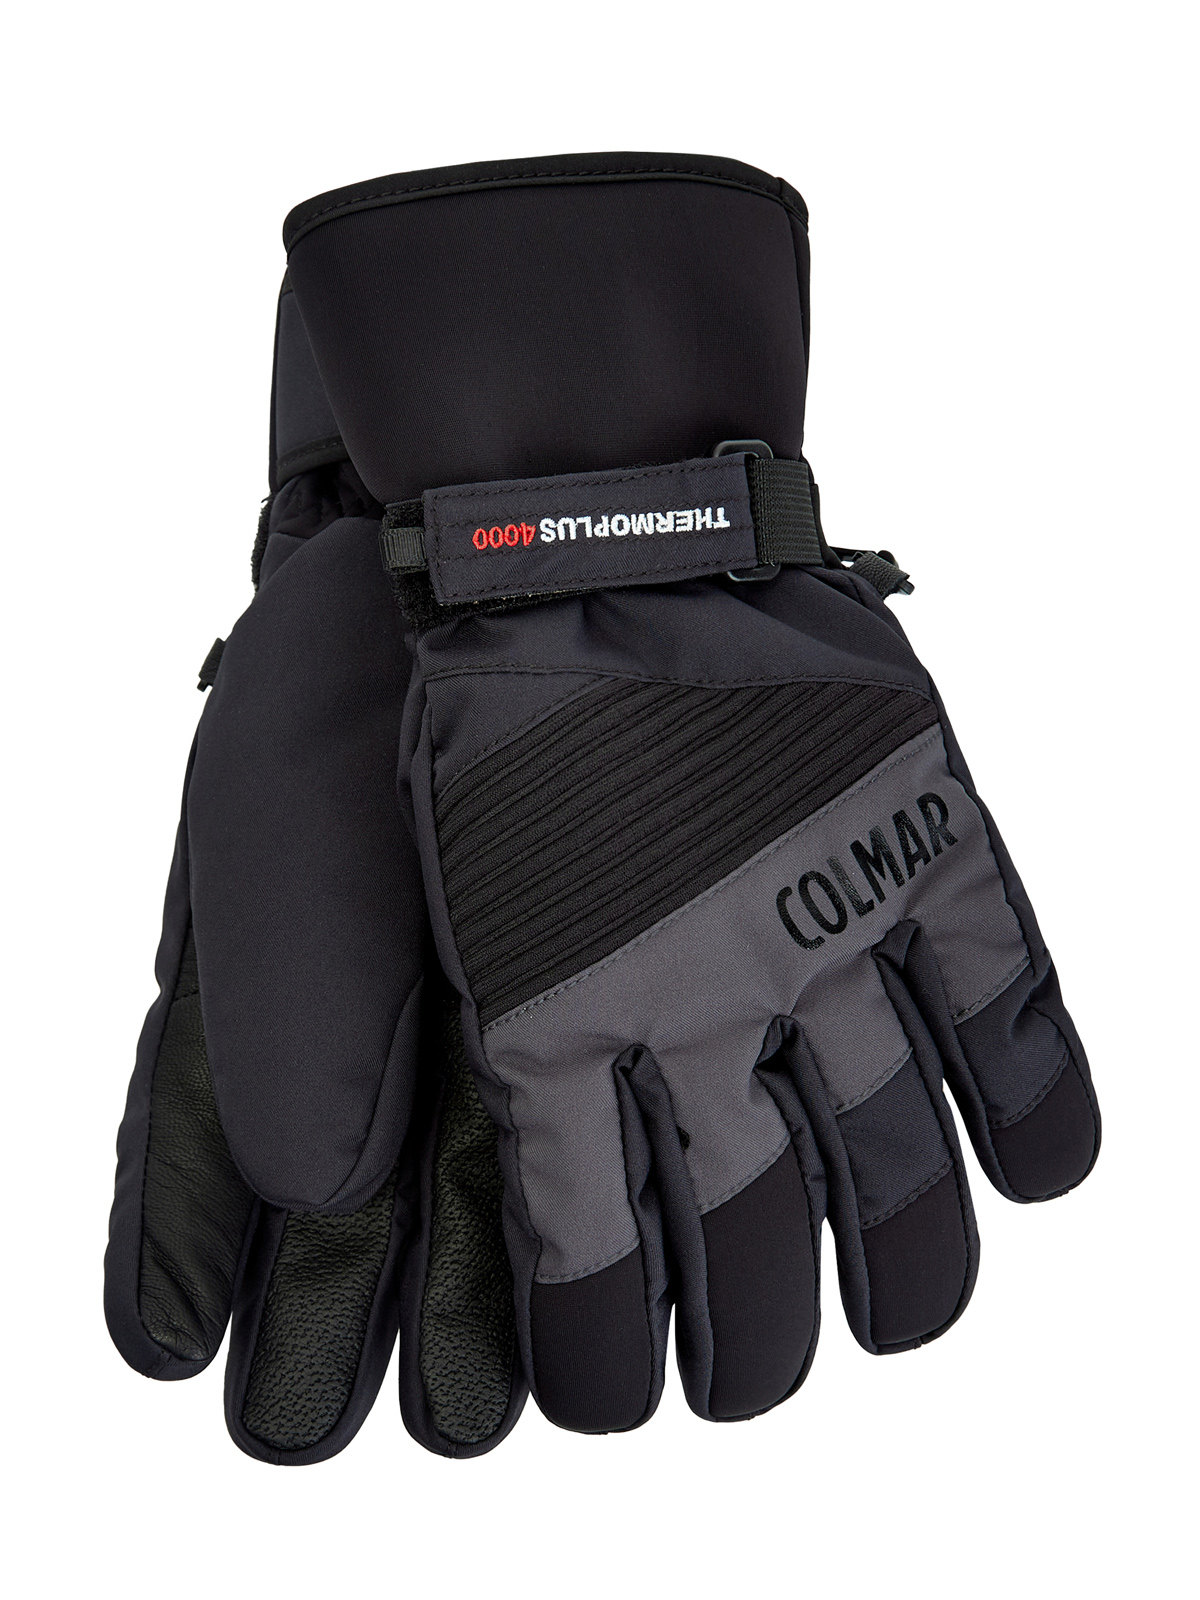 Утепленные перчатки с термозащитой thermo-plus и кожаными вставками COLMAR, цвет черный, размер XL;M;L - фото 1